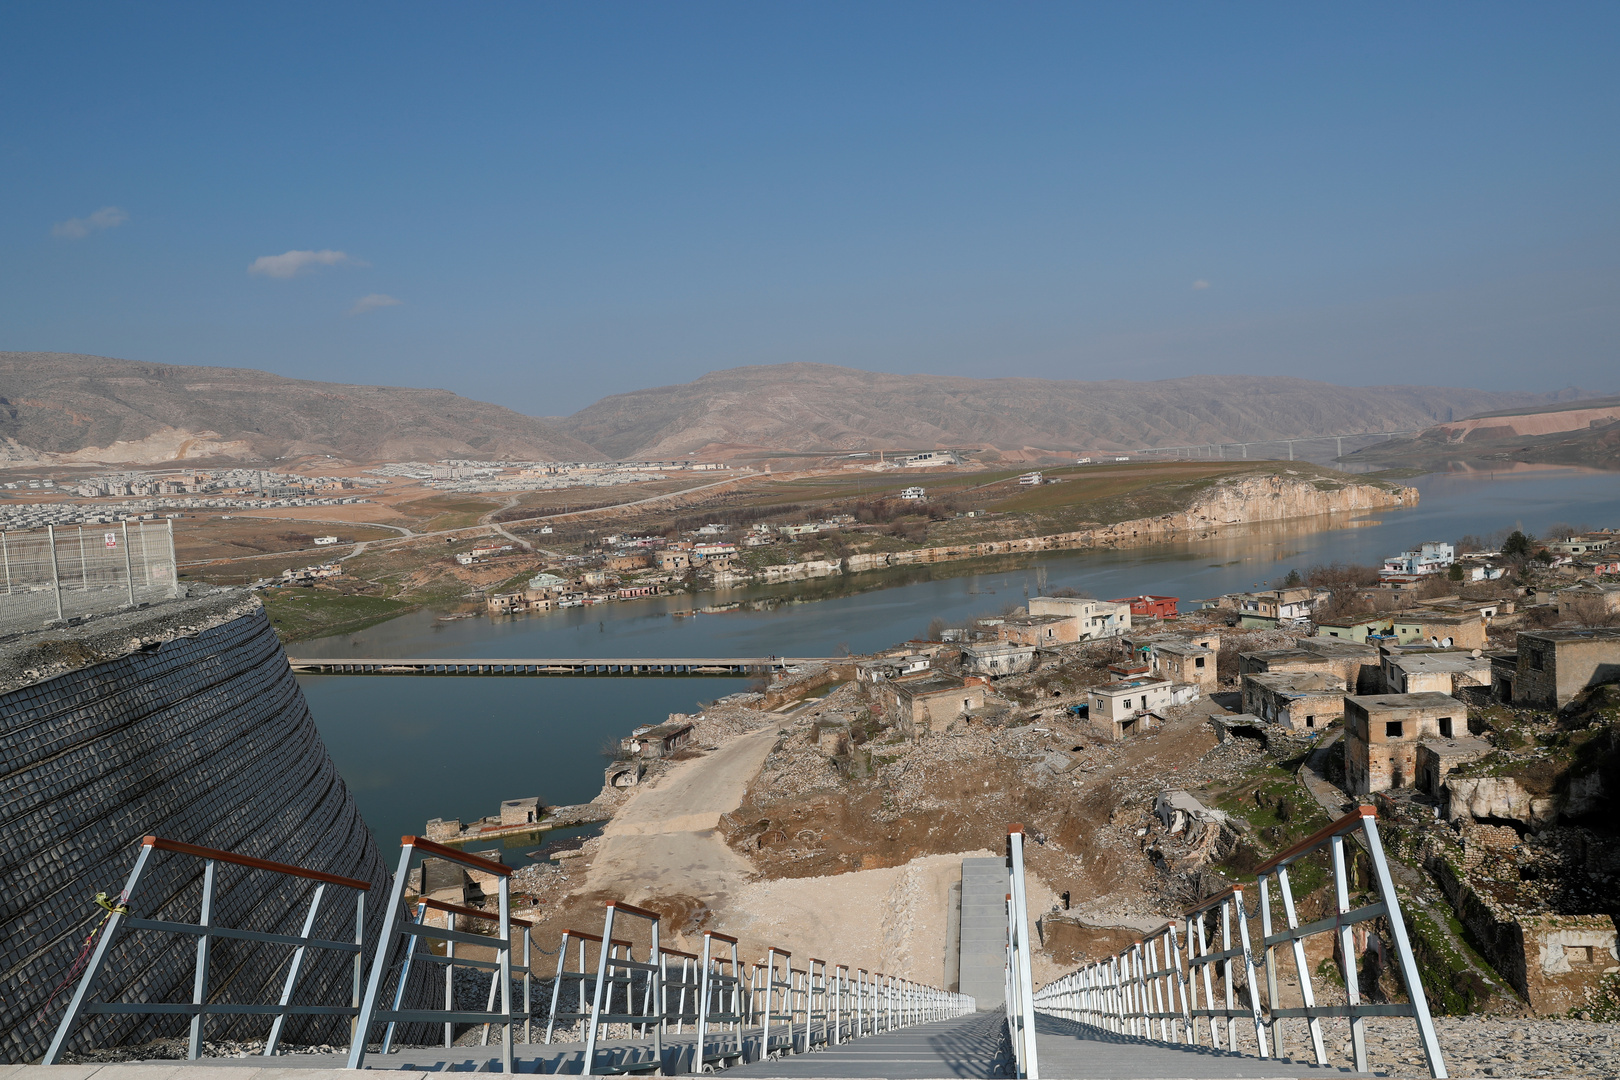 وسط مخاوف العراق.. تركيا تبدأ تشغيل سد أقامته على نهر دجلة بطاقته القصوى